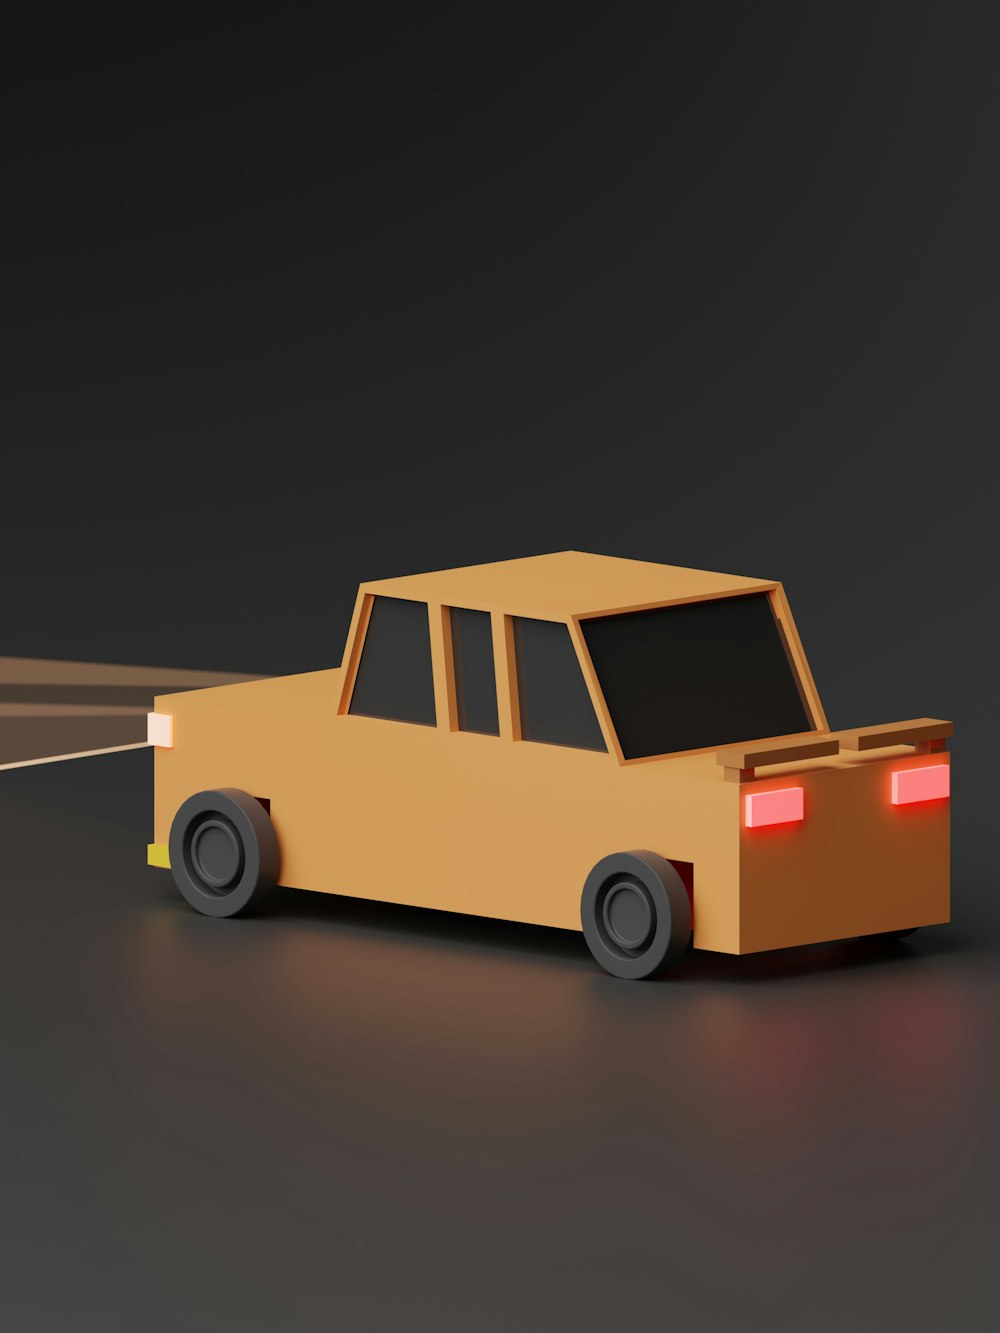 a paper model of a car driving down a road